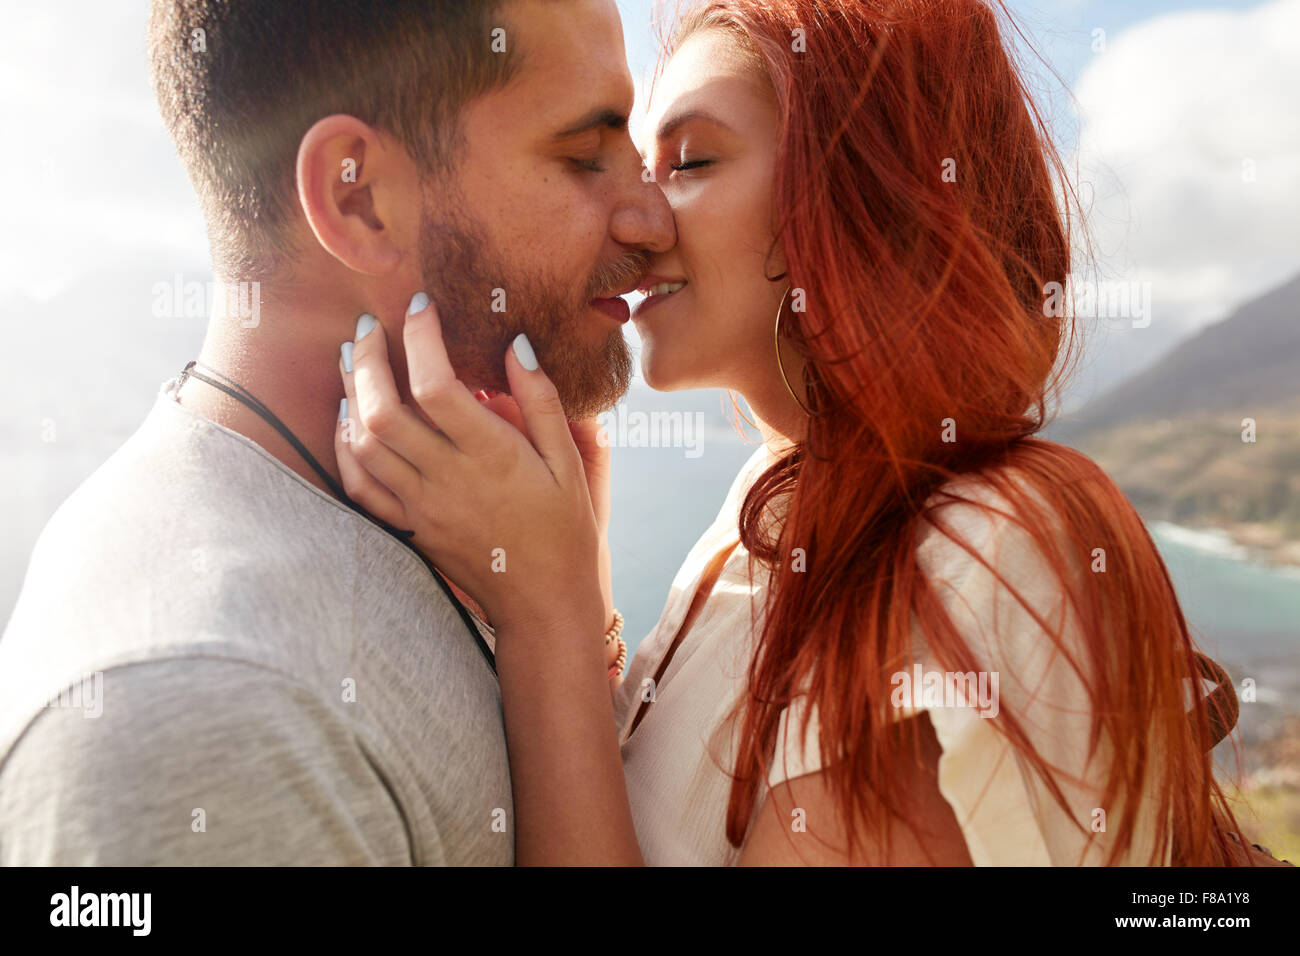 Immagine ravvicinata di affettuosa coppia giovane abbracciando e baciando all'esterno. Foto Stock